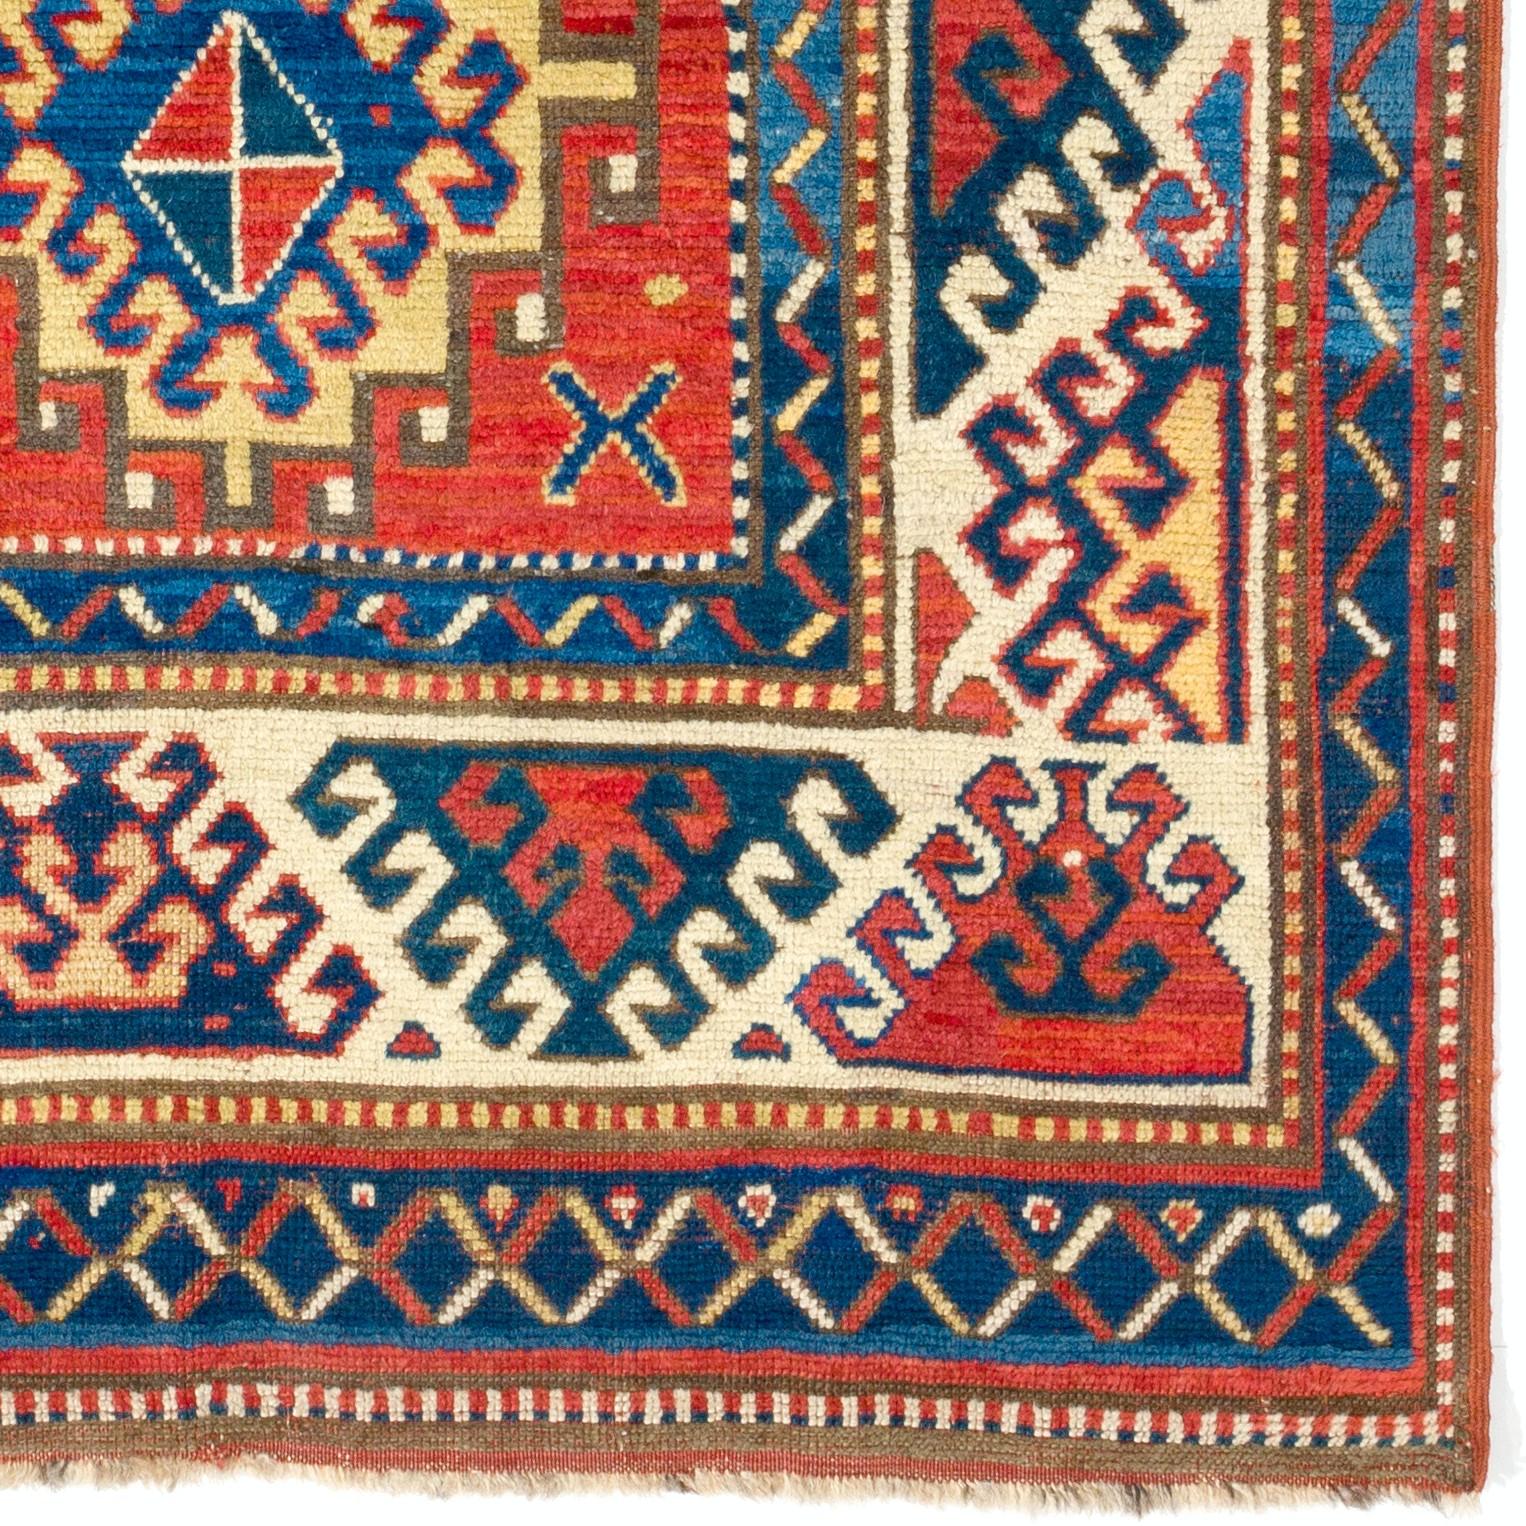 Schillernder antiker kaukasischer Bordjalou-Kazak-Teppich. Um 1870. 
Mittelhoher Wollflor auf Wollbasis. 
Sehr guter Zustand, professionell gewaschen. 
Maße: 4 x 7,3 ft.